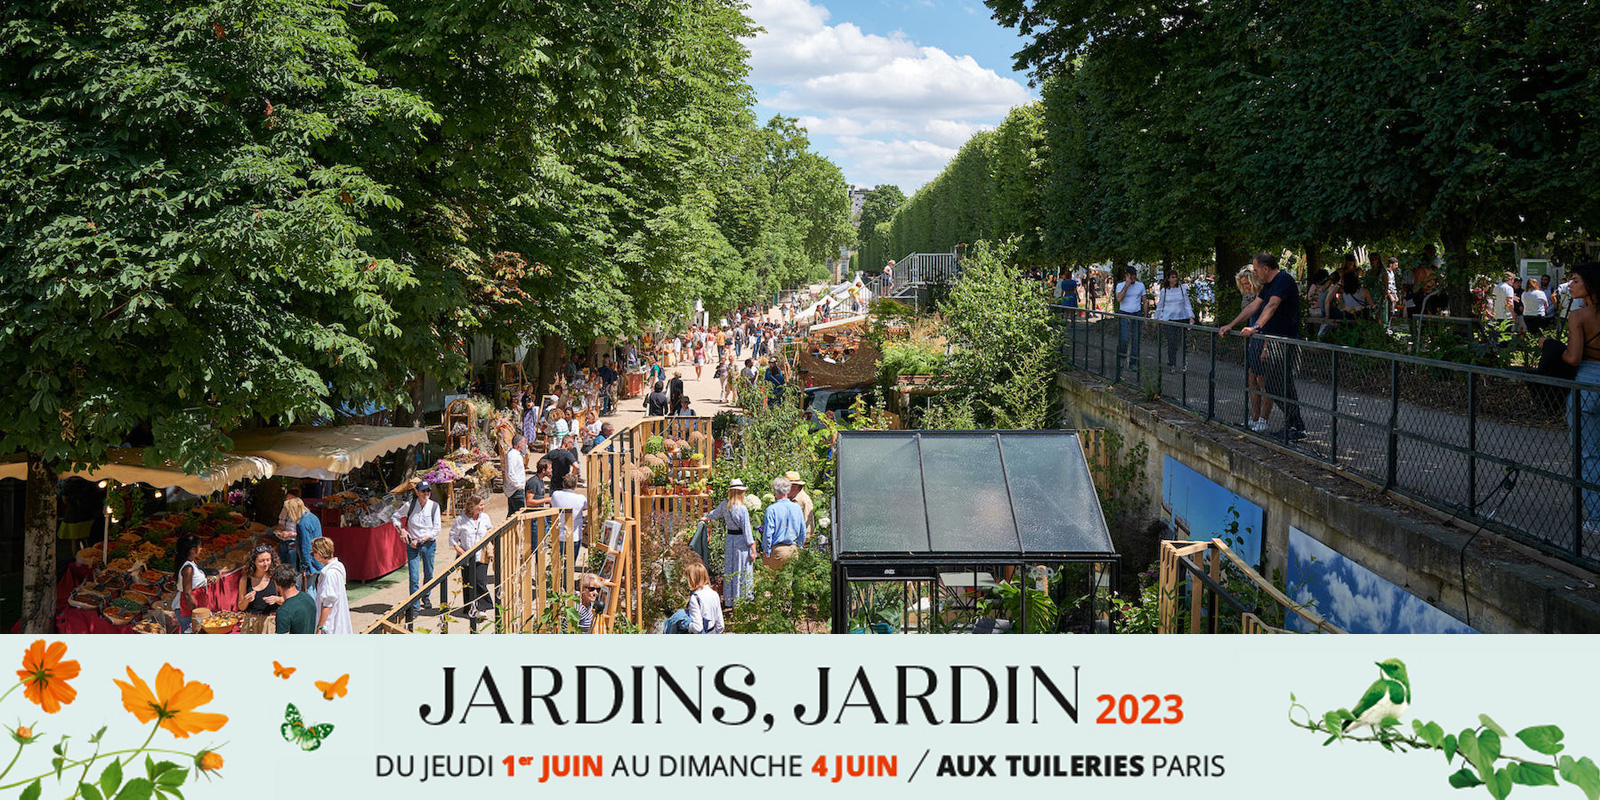 Bandeau de présentation de l'événement Jardins, Jardin, organisé aux Tuileries en juin 2023